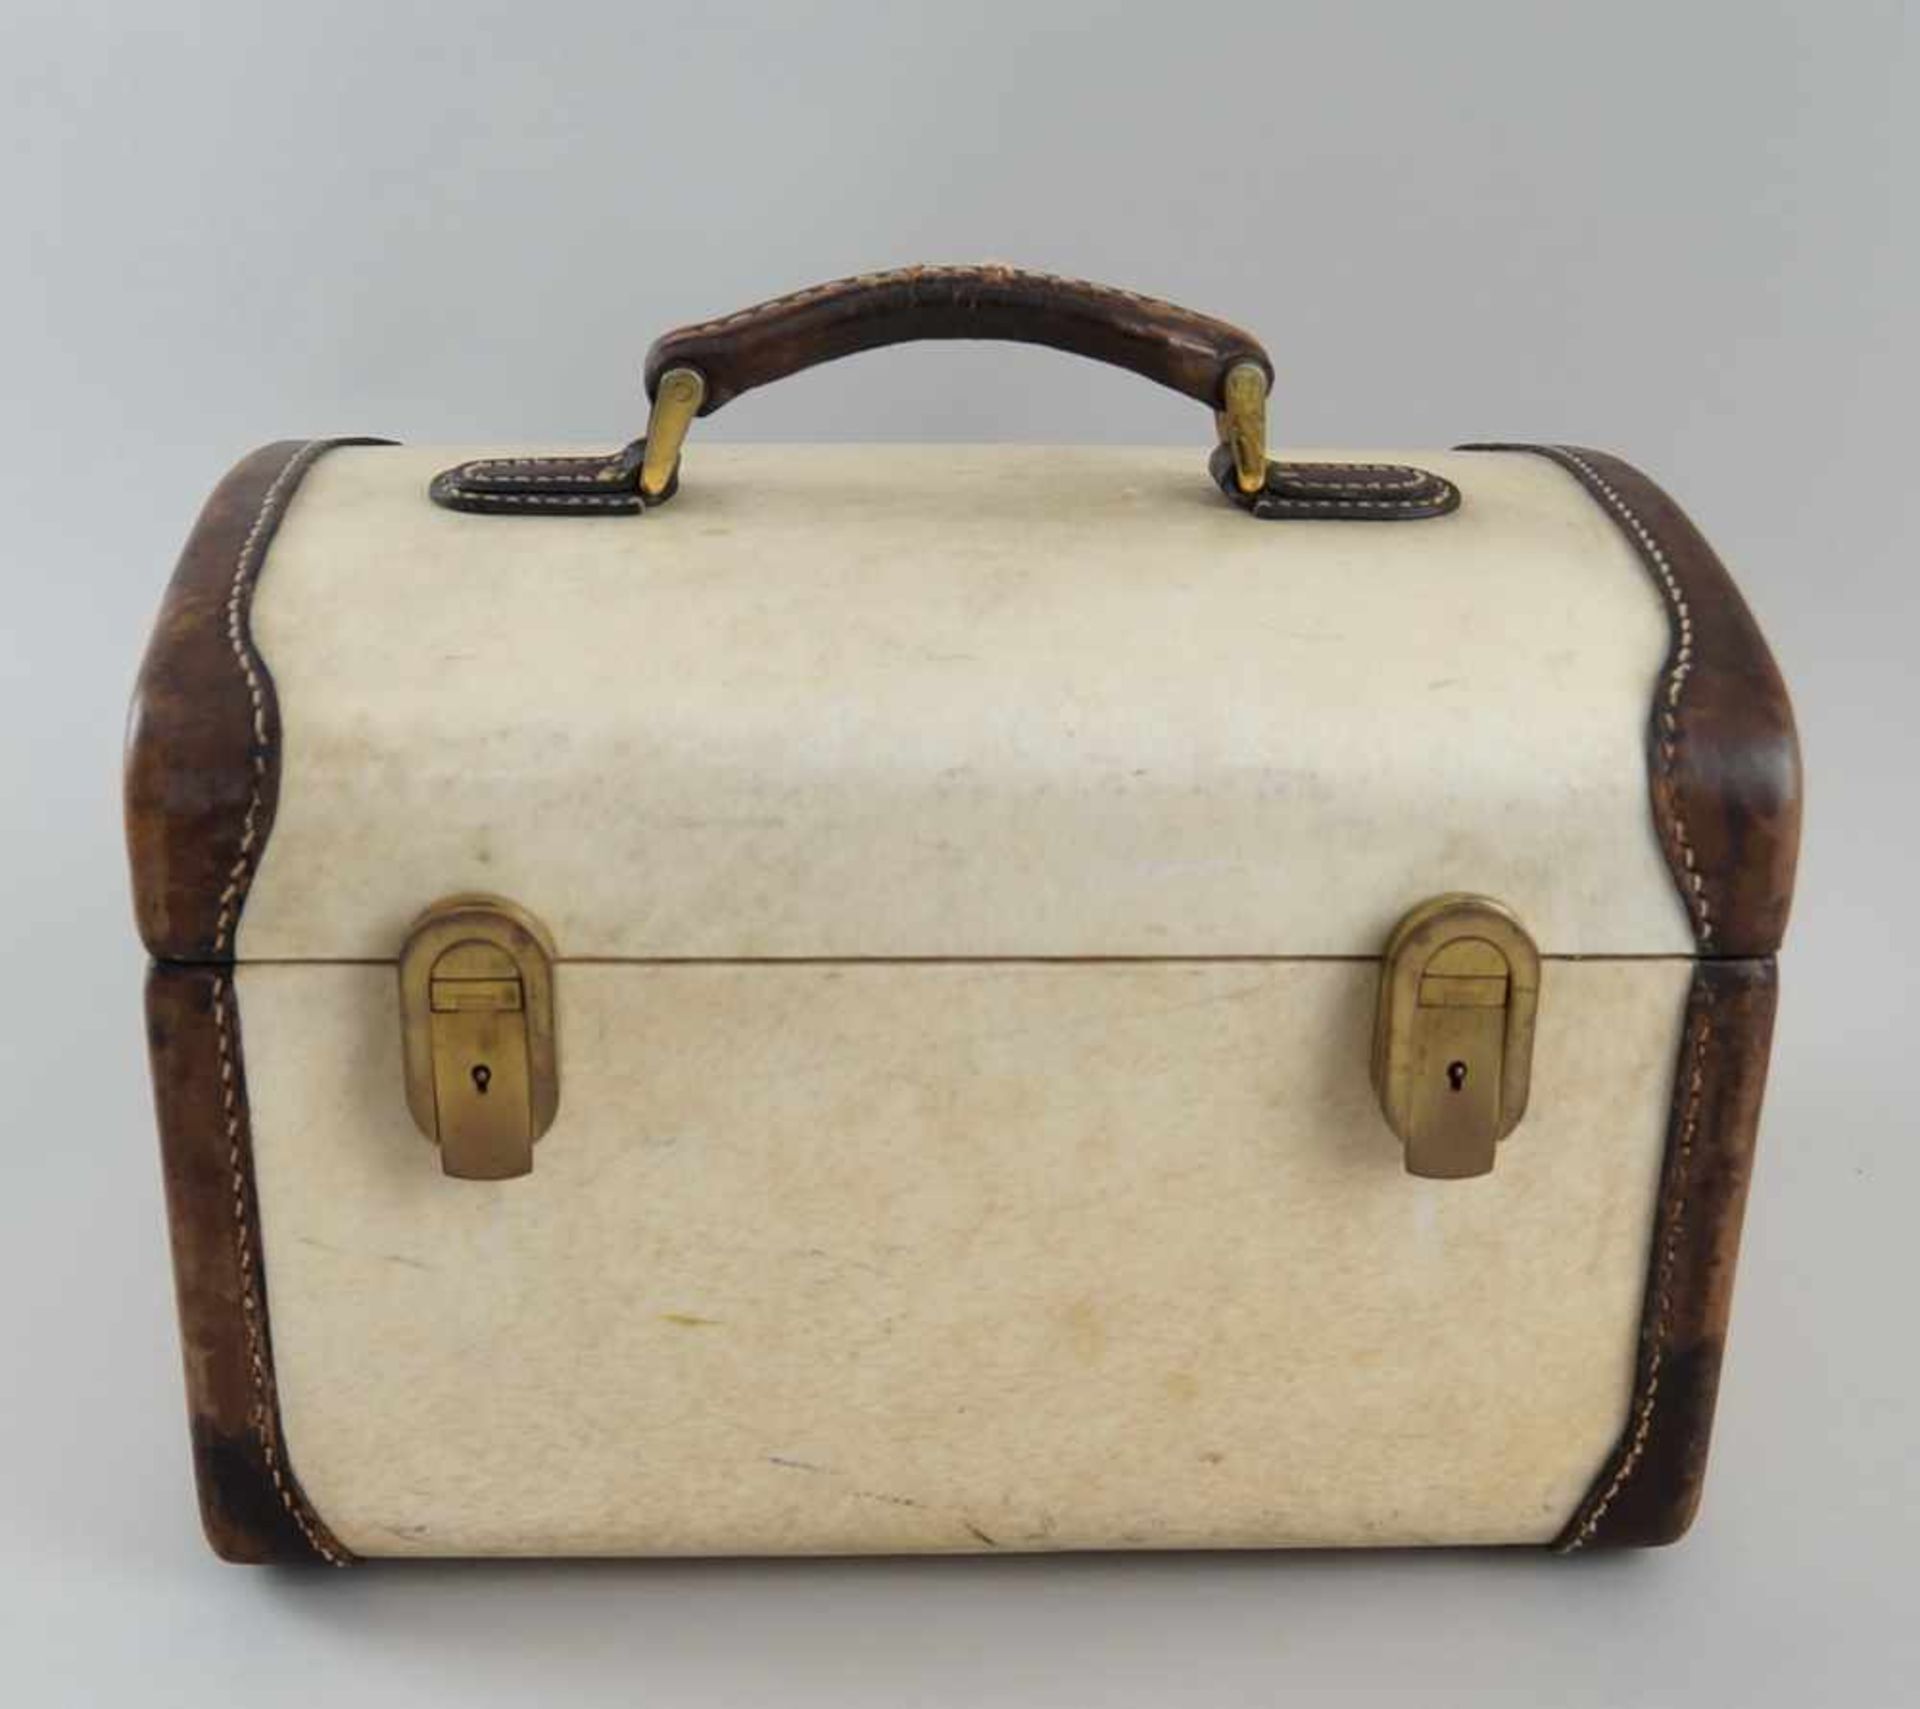 Feiner Koffer mit Beschlägen, Pergament, bezeichnet Franzi Italien, 22x32x22 cm- - -24.00 % buyer' - Bild 3 aus 8